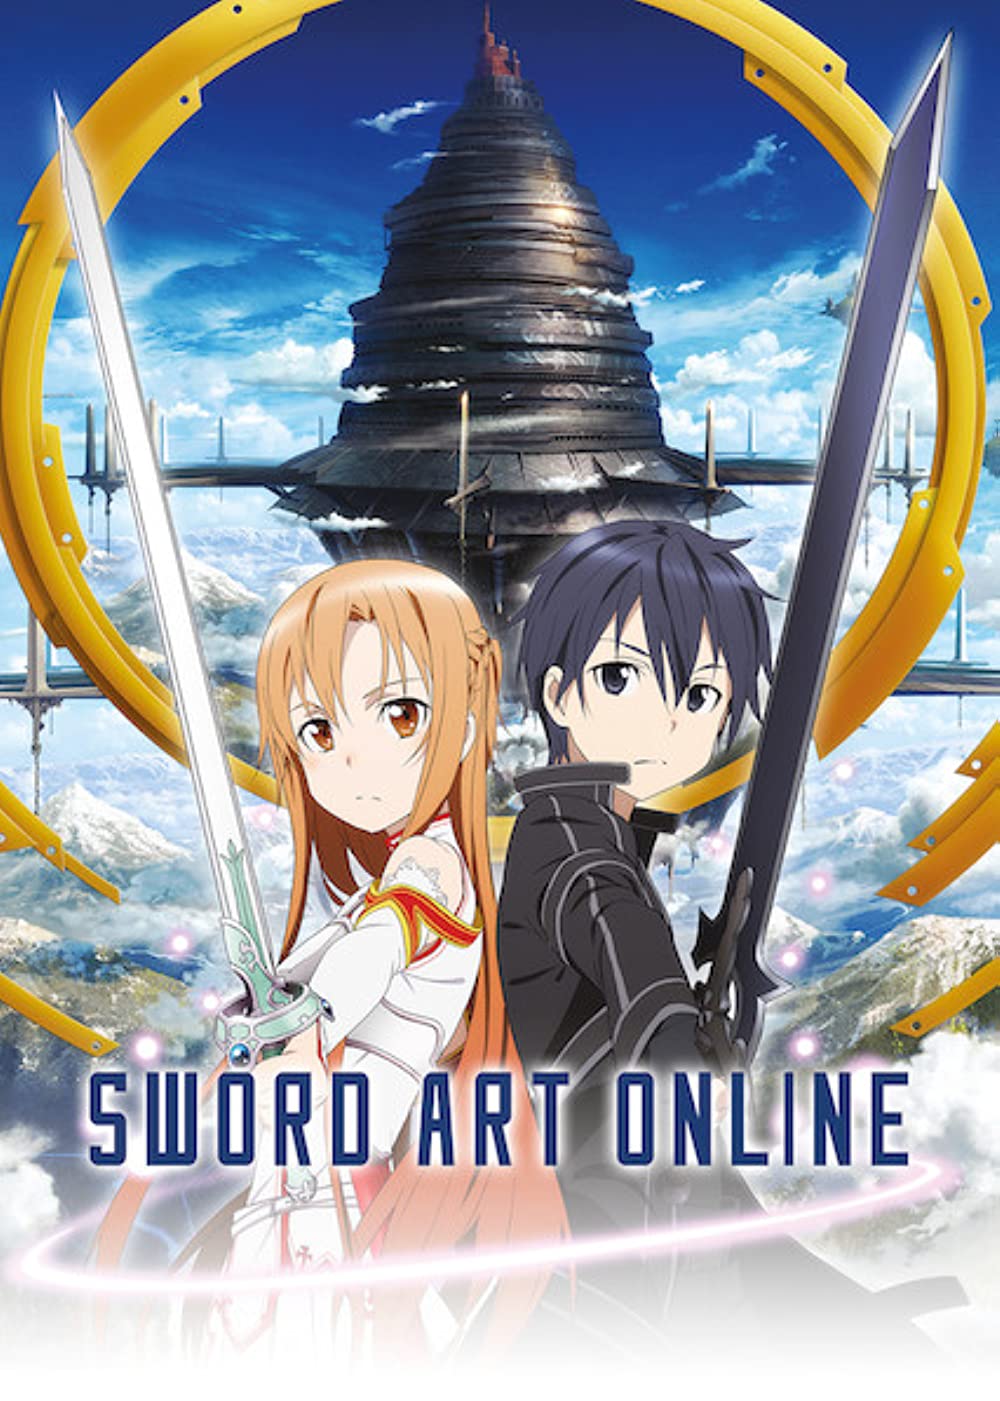 Sword art online characters